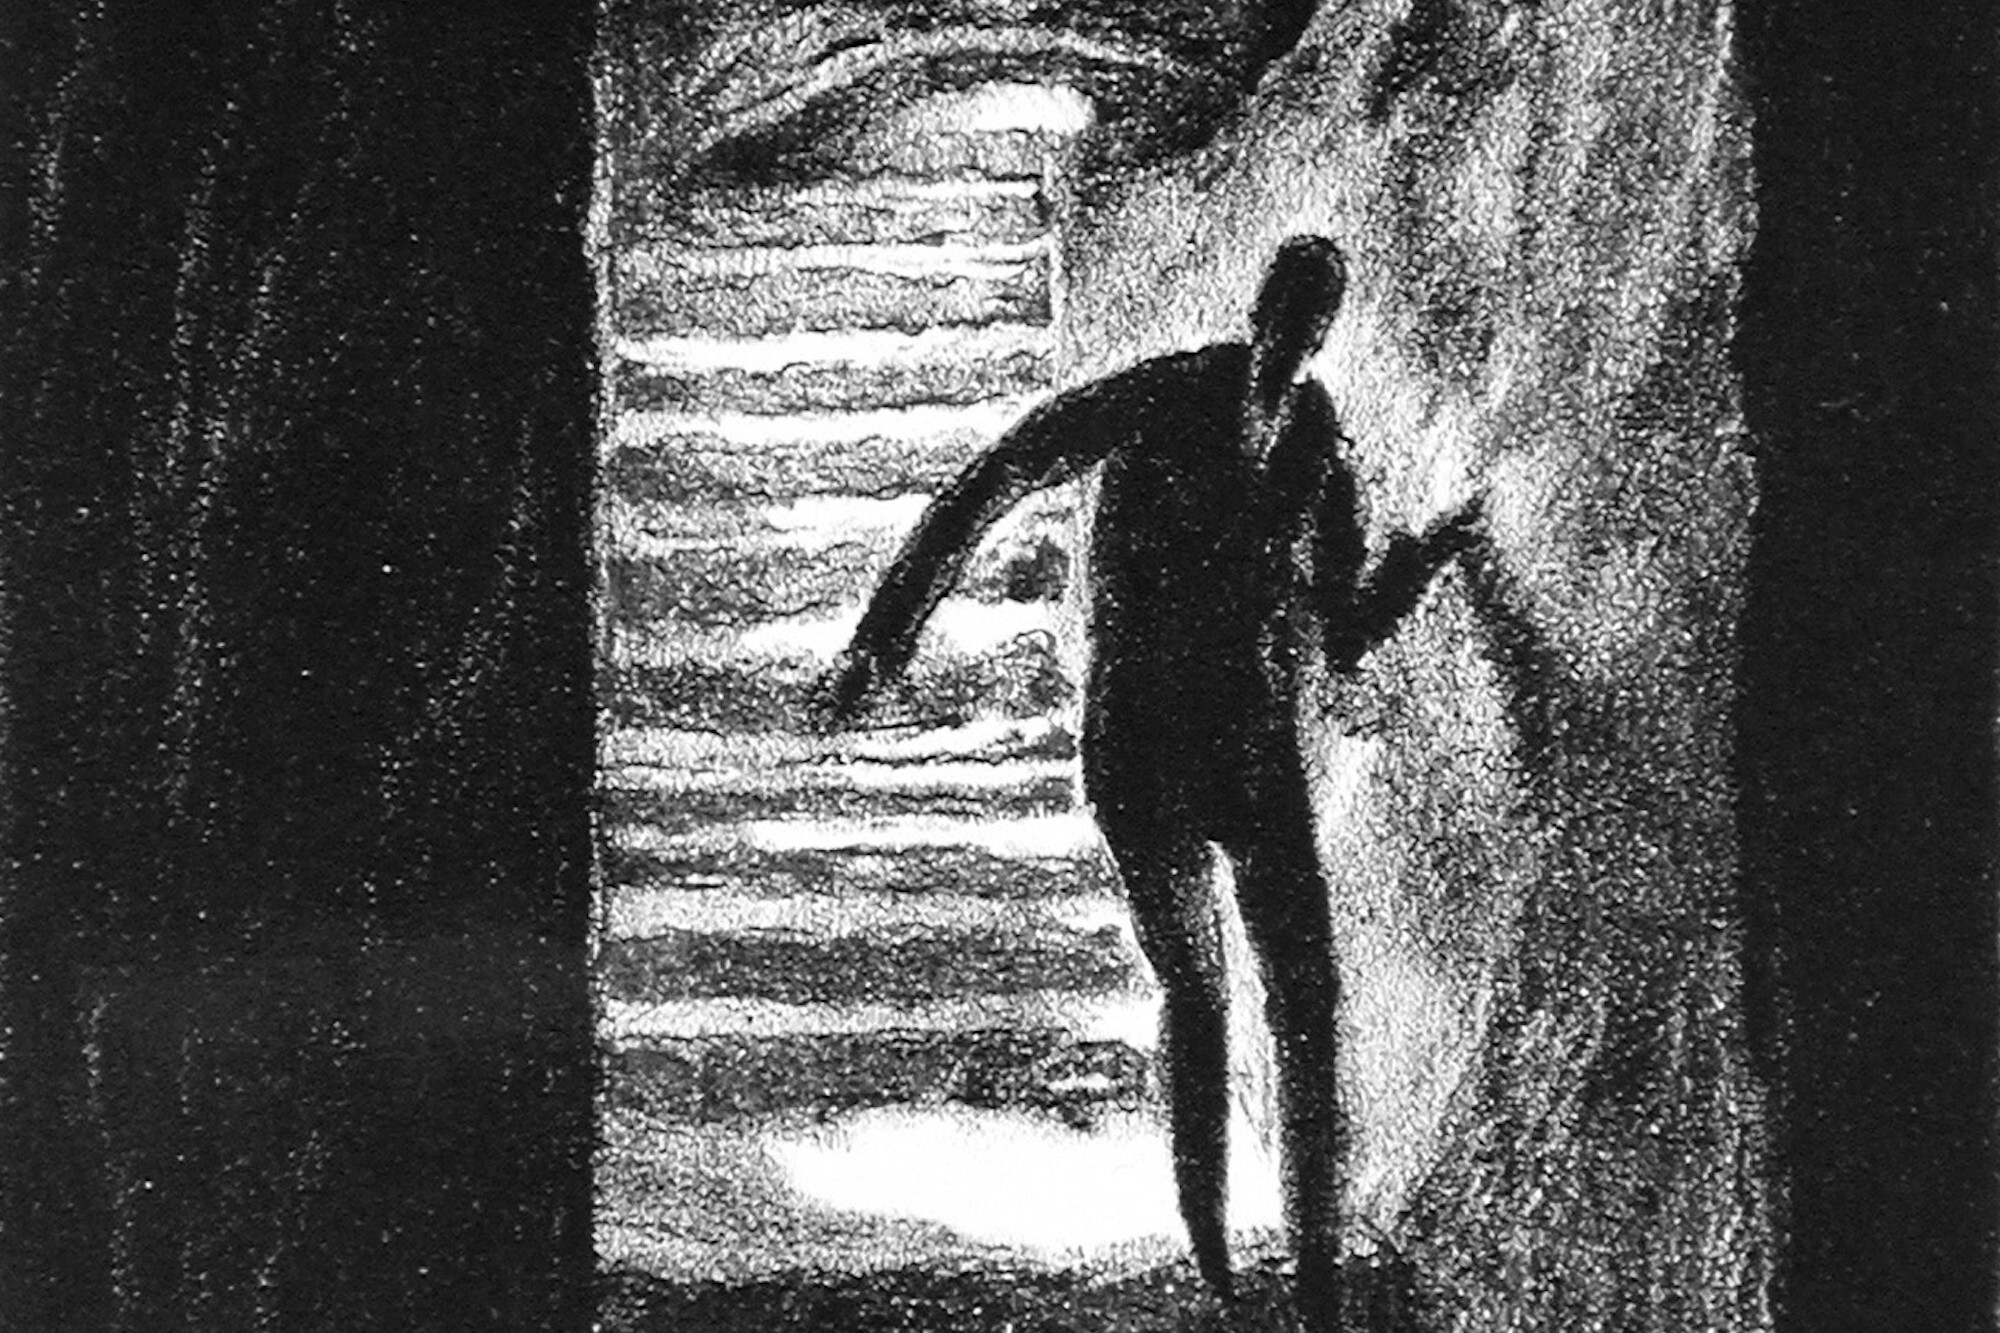 Die Ausstellung "Phantome der Nacht" feiert 100 Jahre Nosferatu und betrachtet die künstlerischen Einflüsse auf und durch Murnaus Vampirfilm.